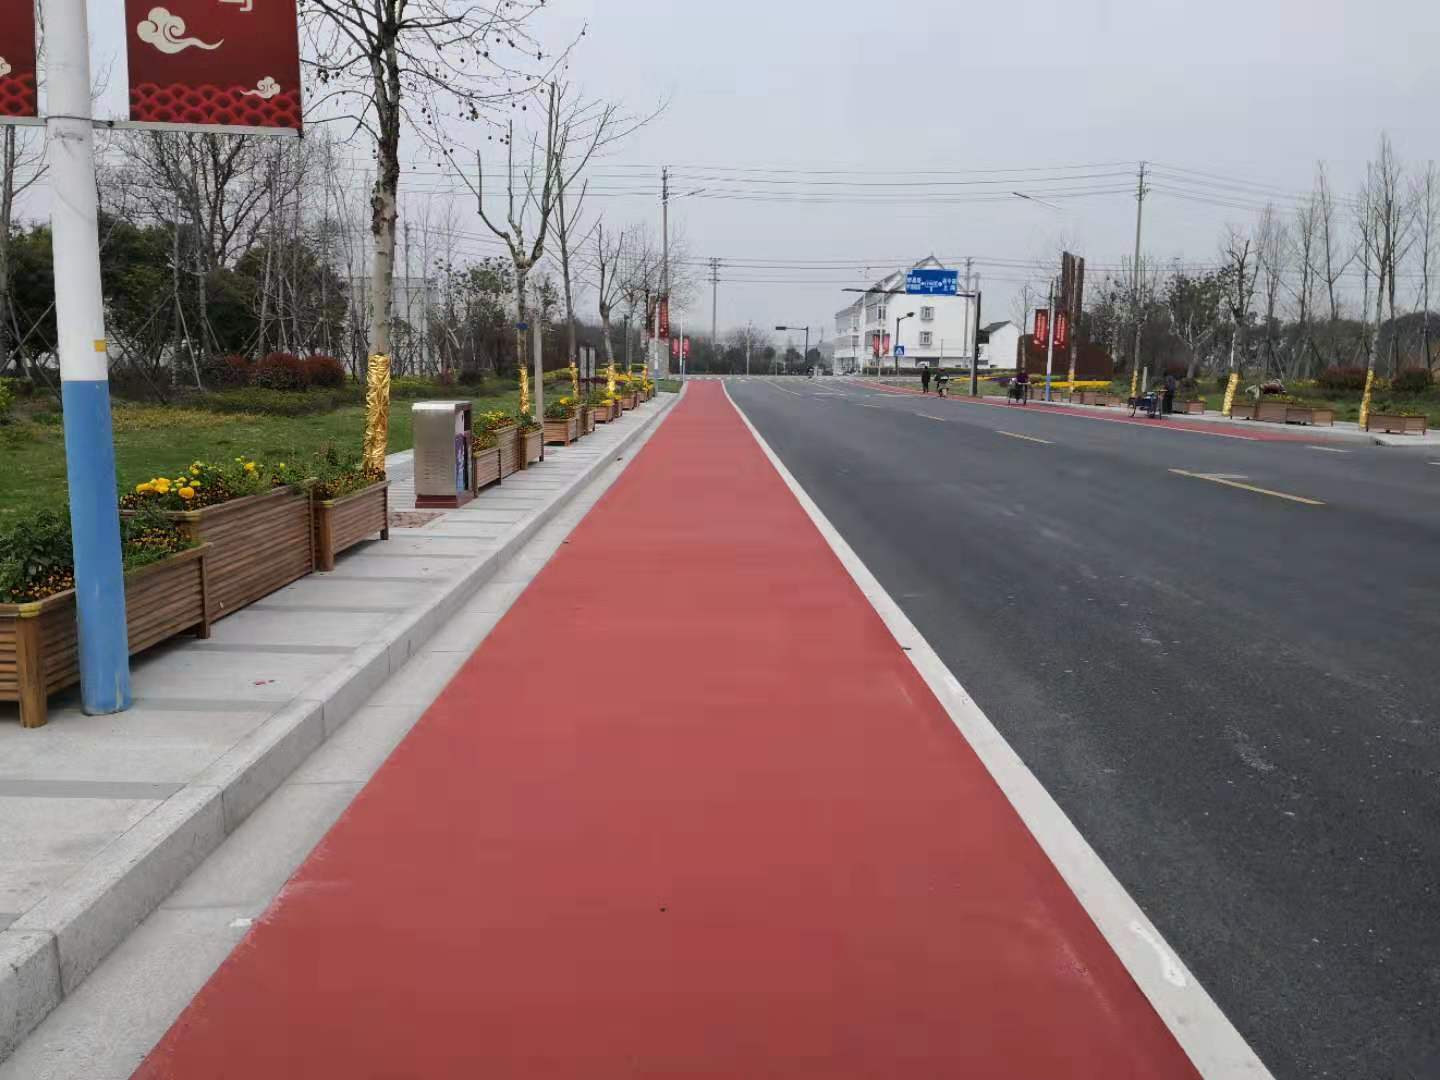 原装彩色防滑路面价格_口碑好的-上海柯路美道路工程有限公司